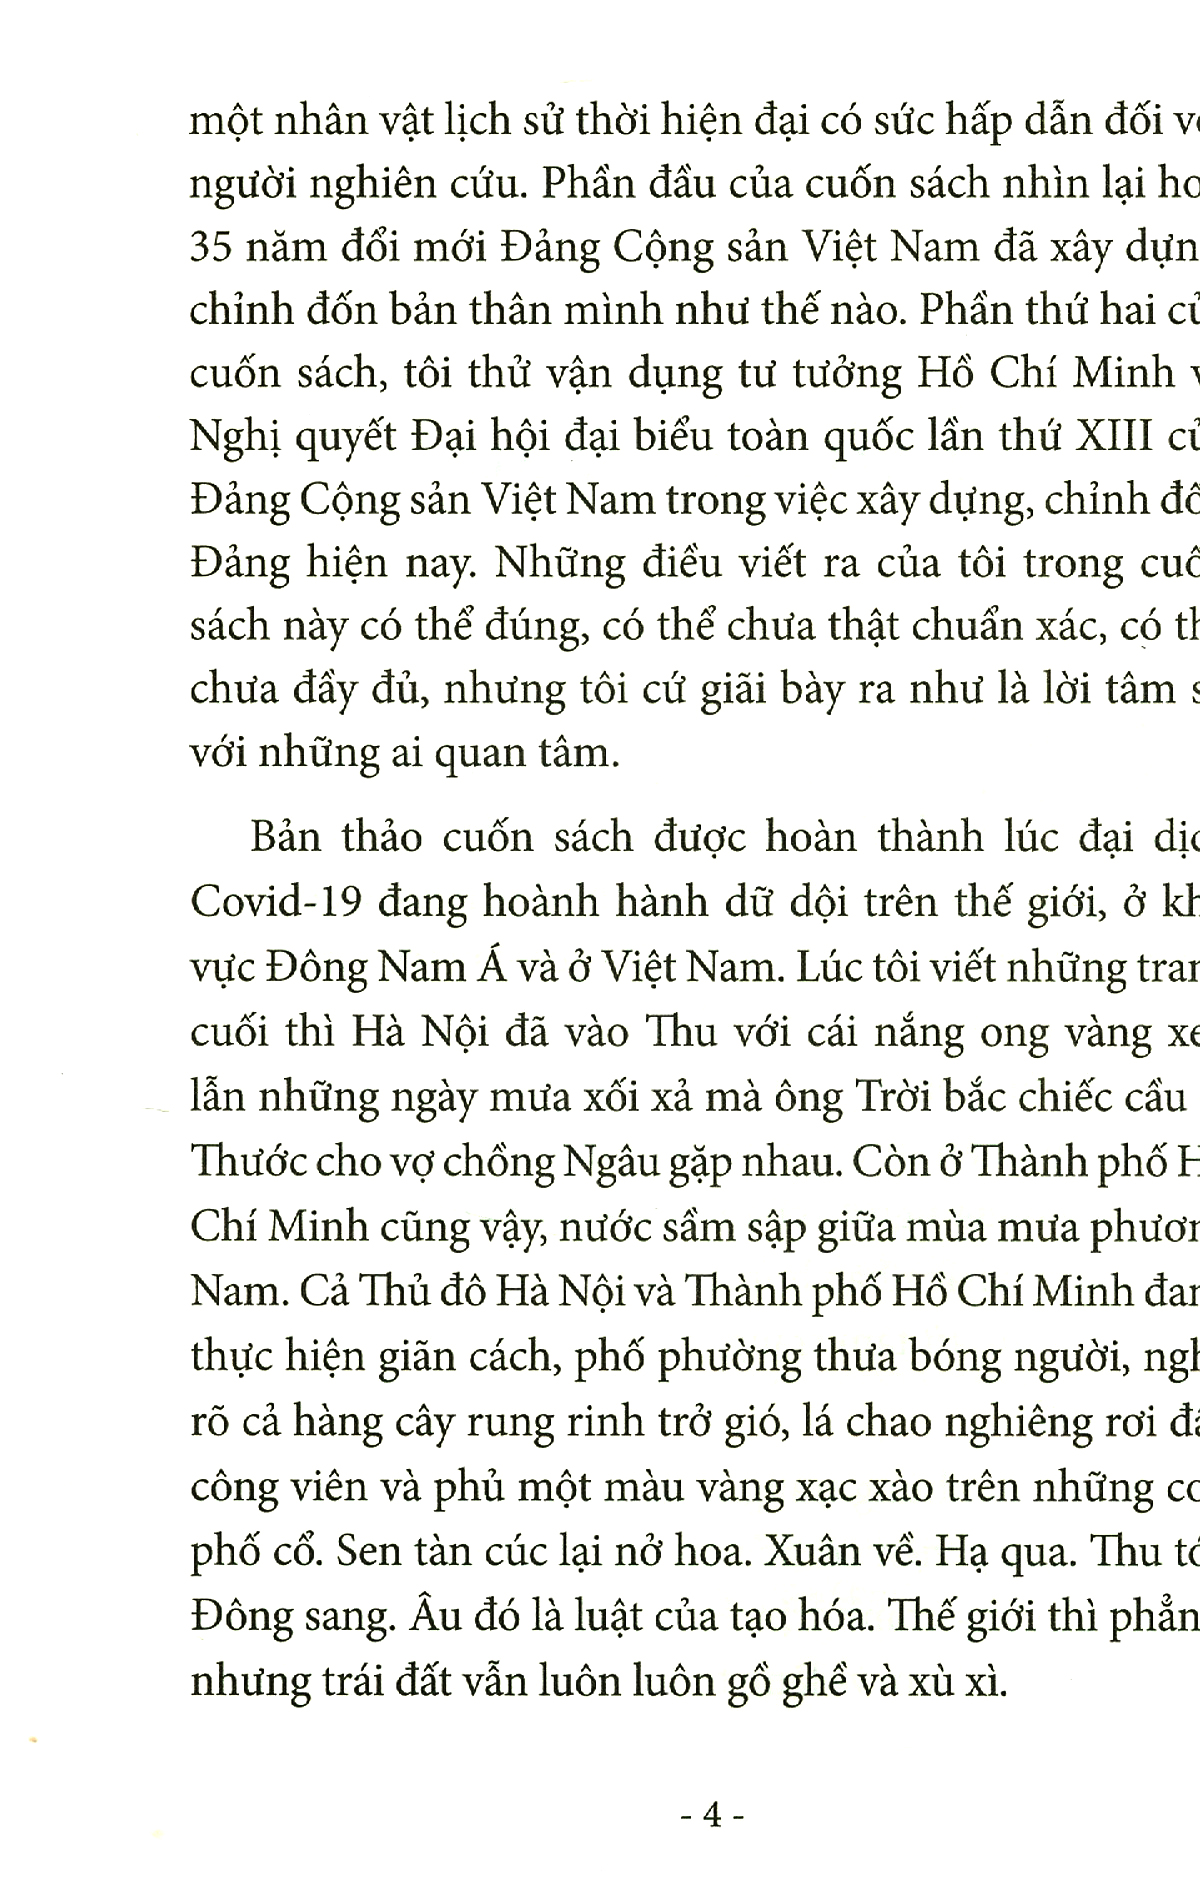 Xây Dựng, Chỉnh Đốn Đảng - Theo Sự Chỉ Dẫn Của Tư Tưởng Hồ Chí Minh PDF